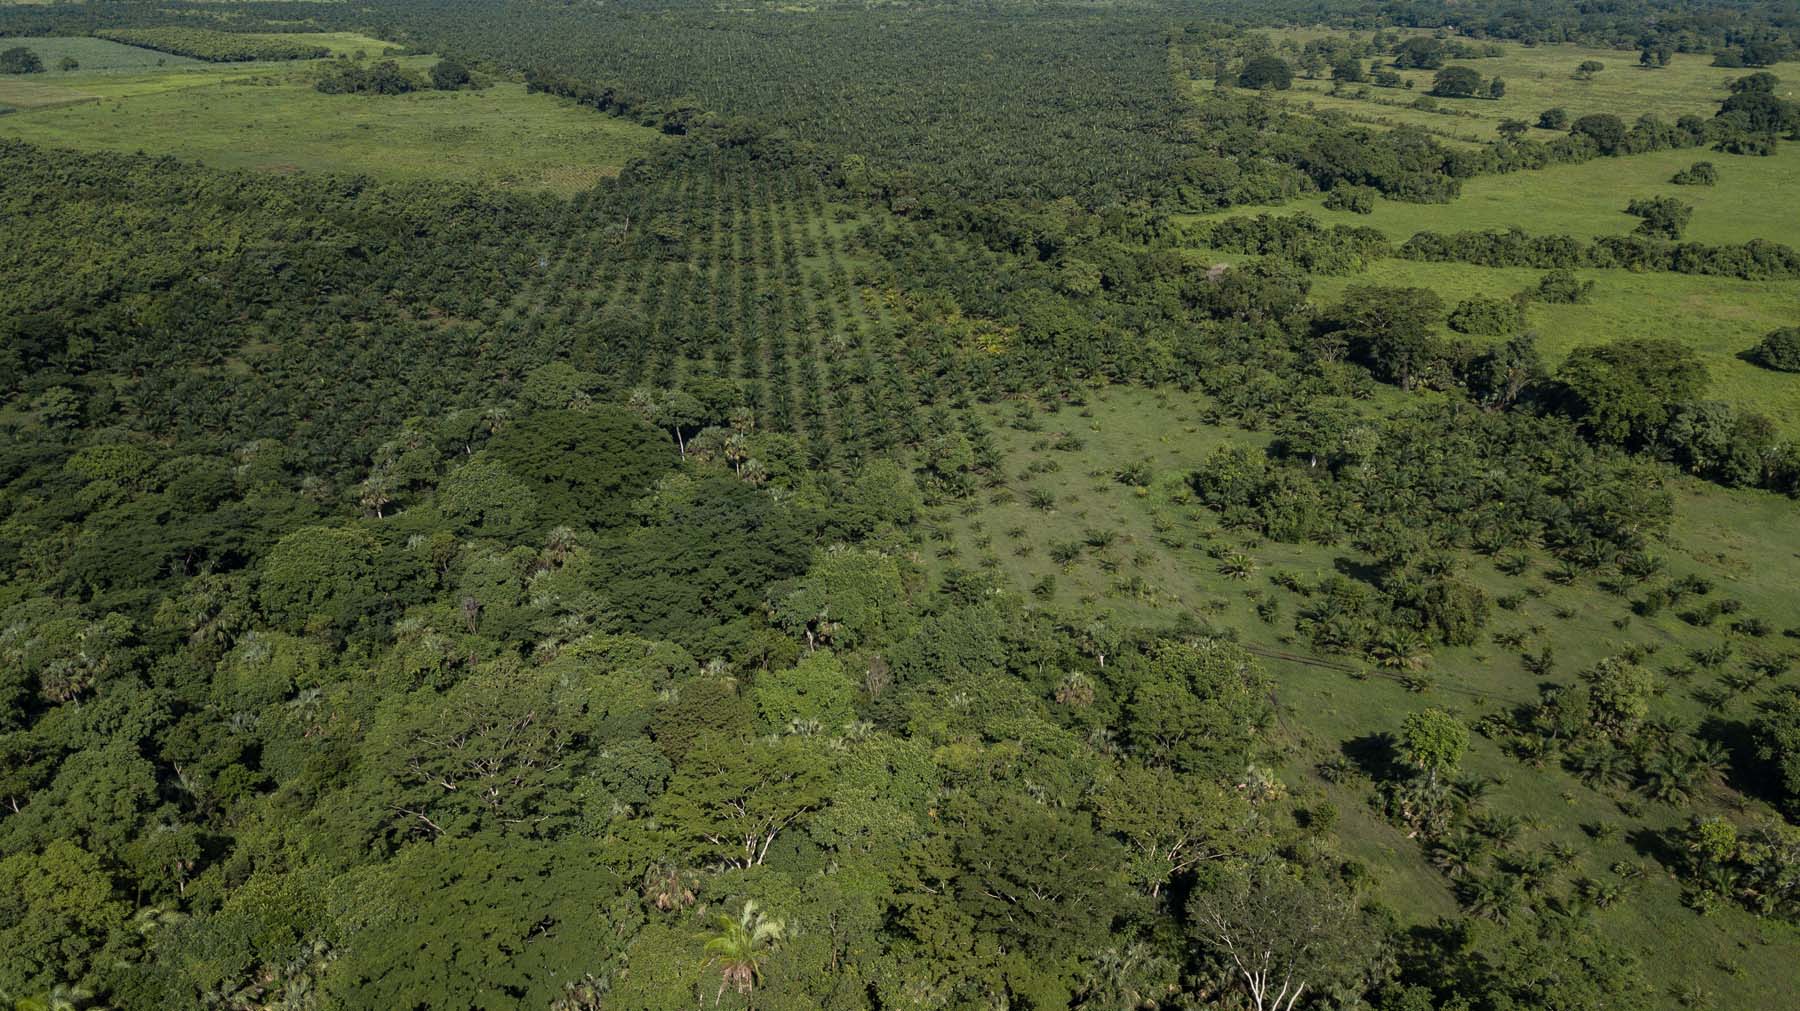 Palma de aceite: las plantaciones que acorralan selvas y manglares en el sureste de México - Palma-de-aceite-77